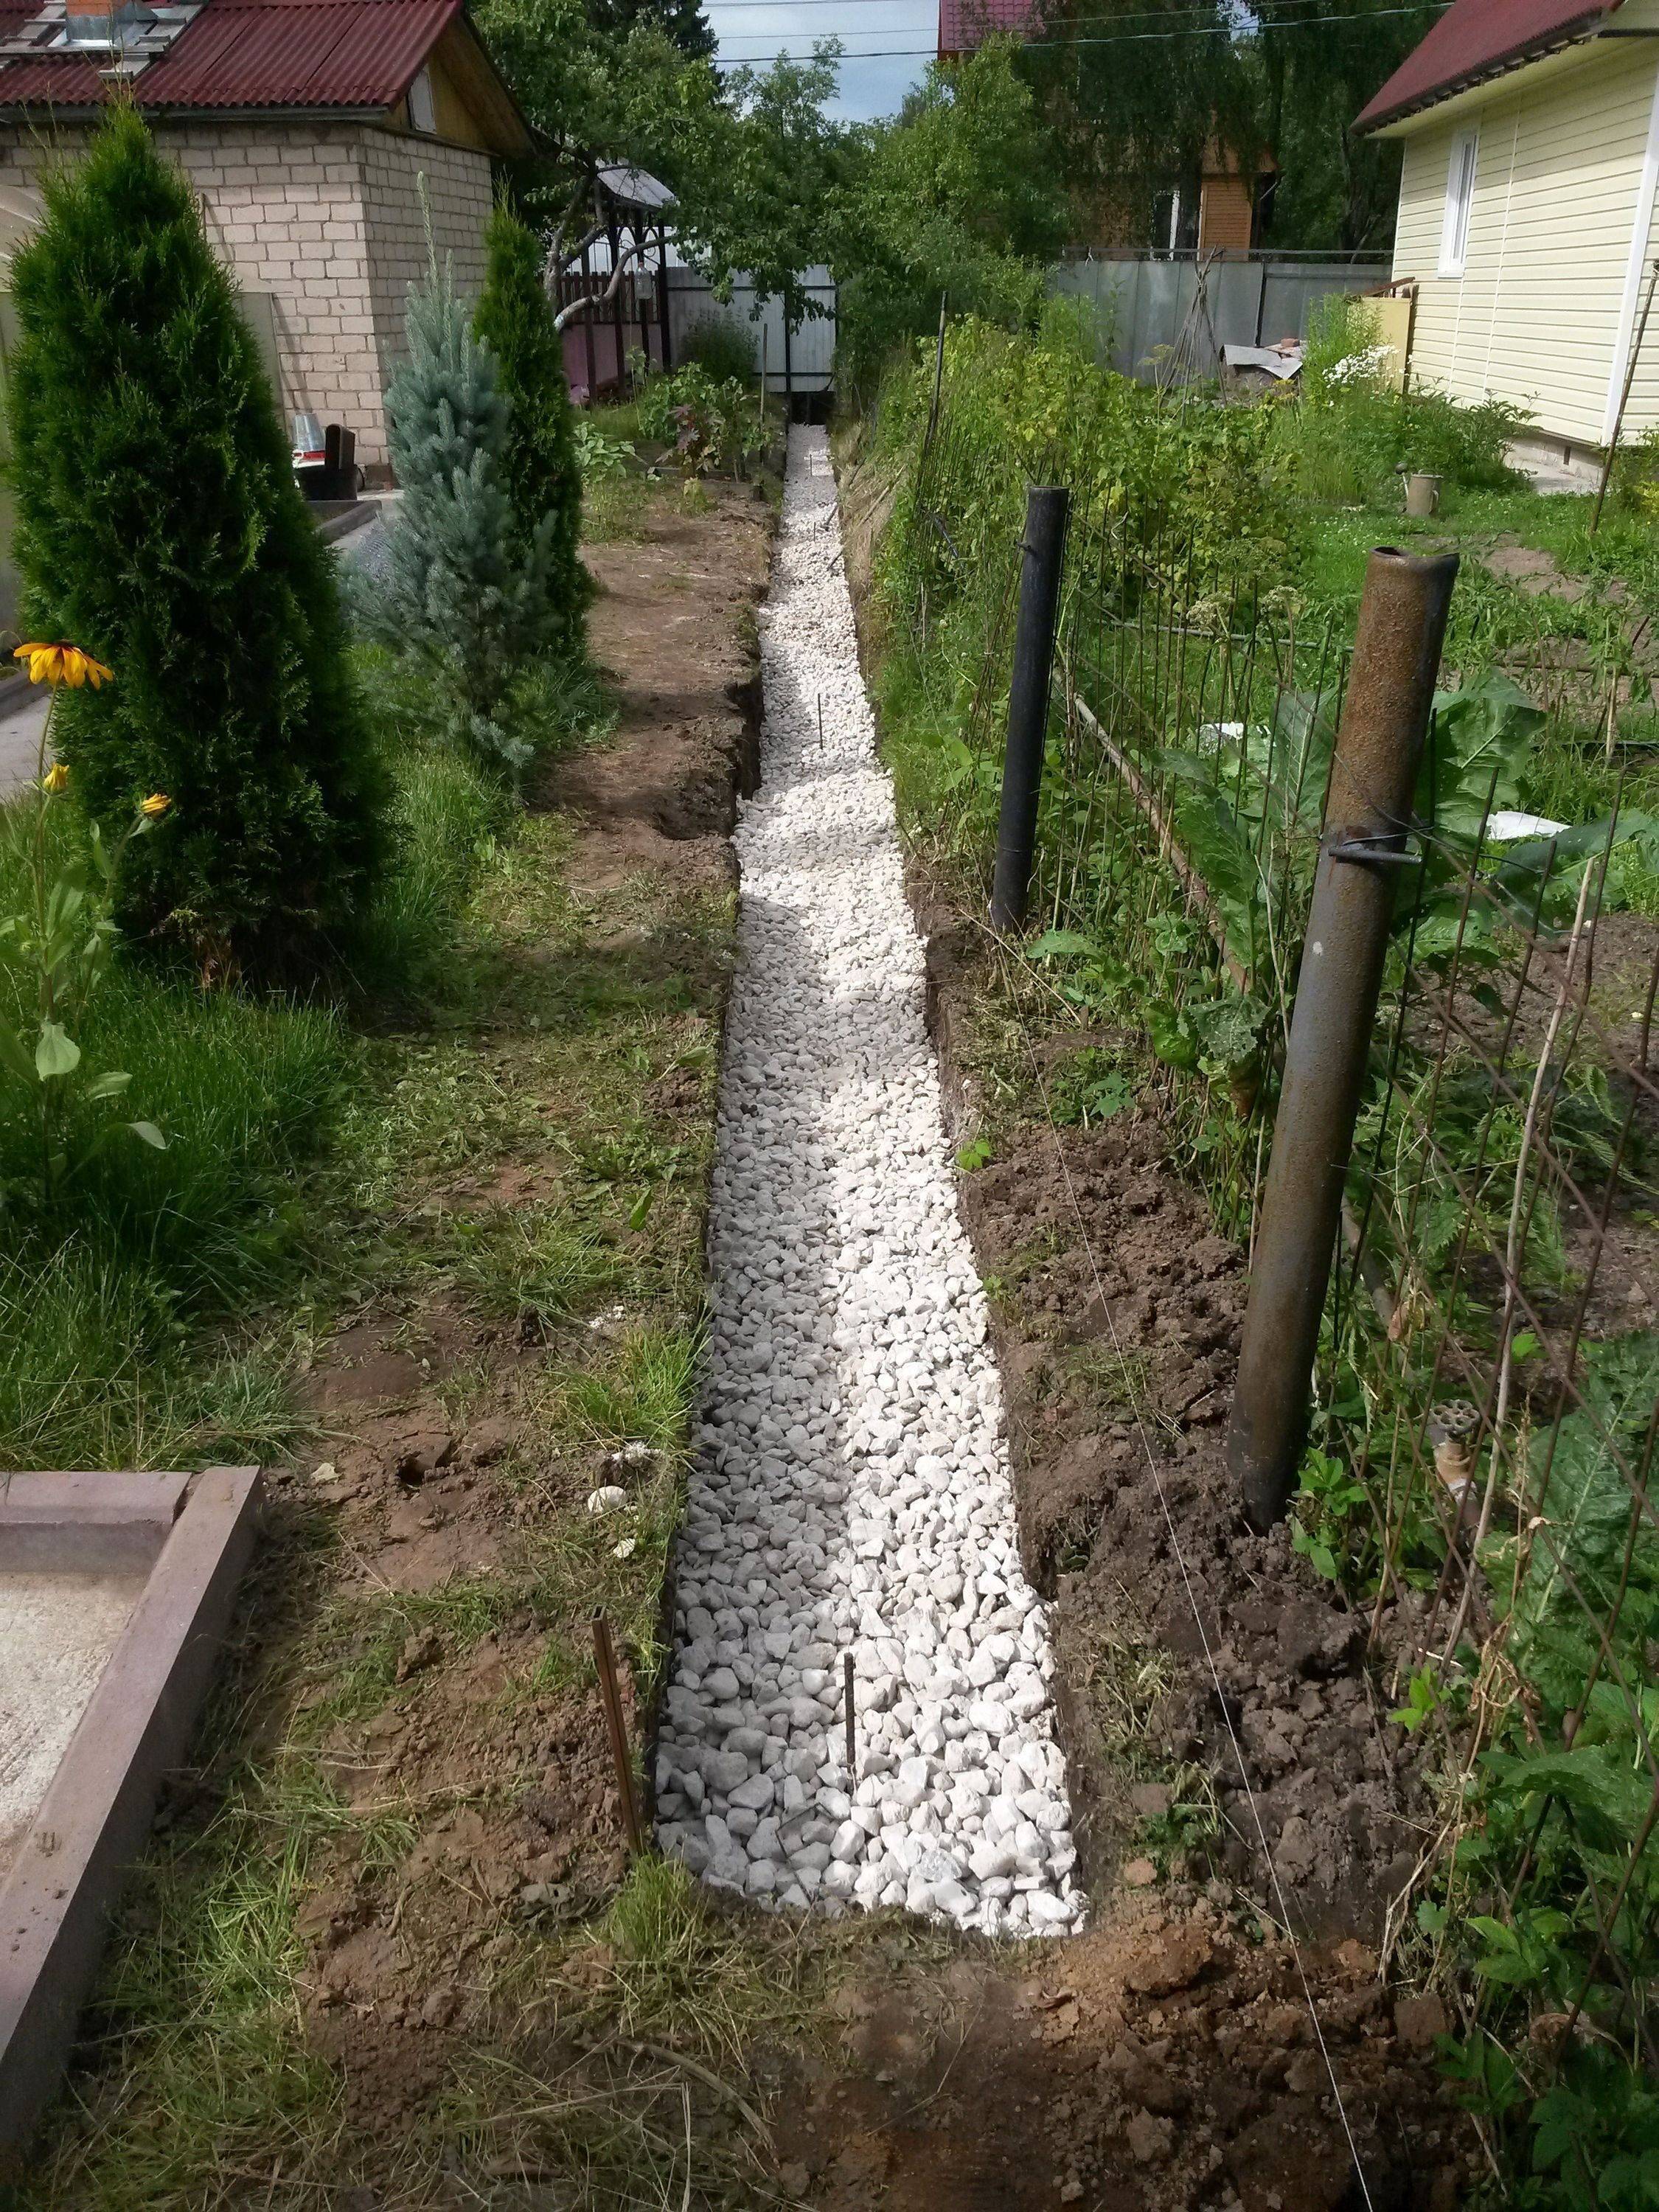 Дренаж участка - как самостоятельно защитить сад от застоя воды